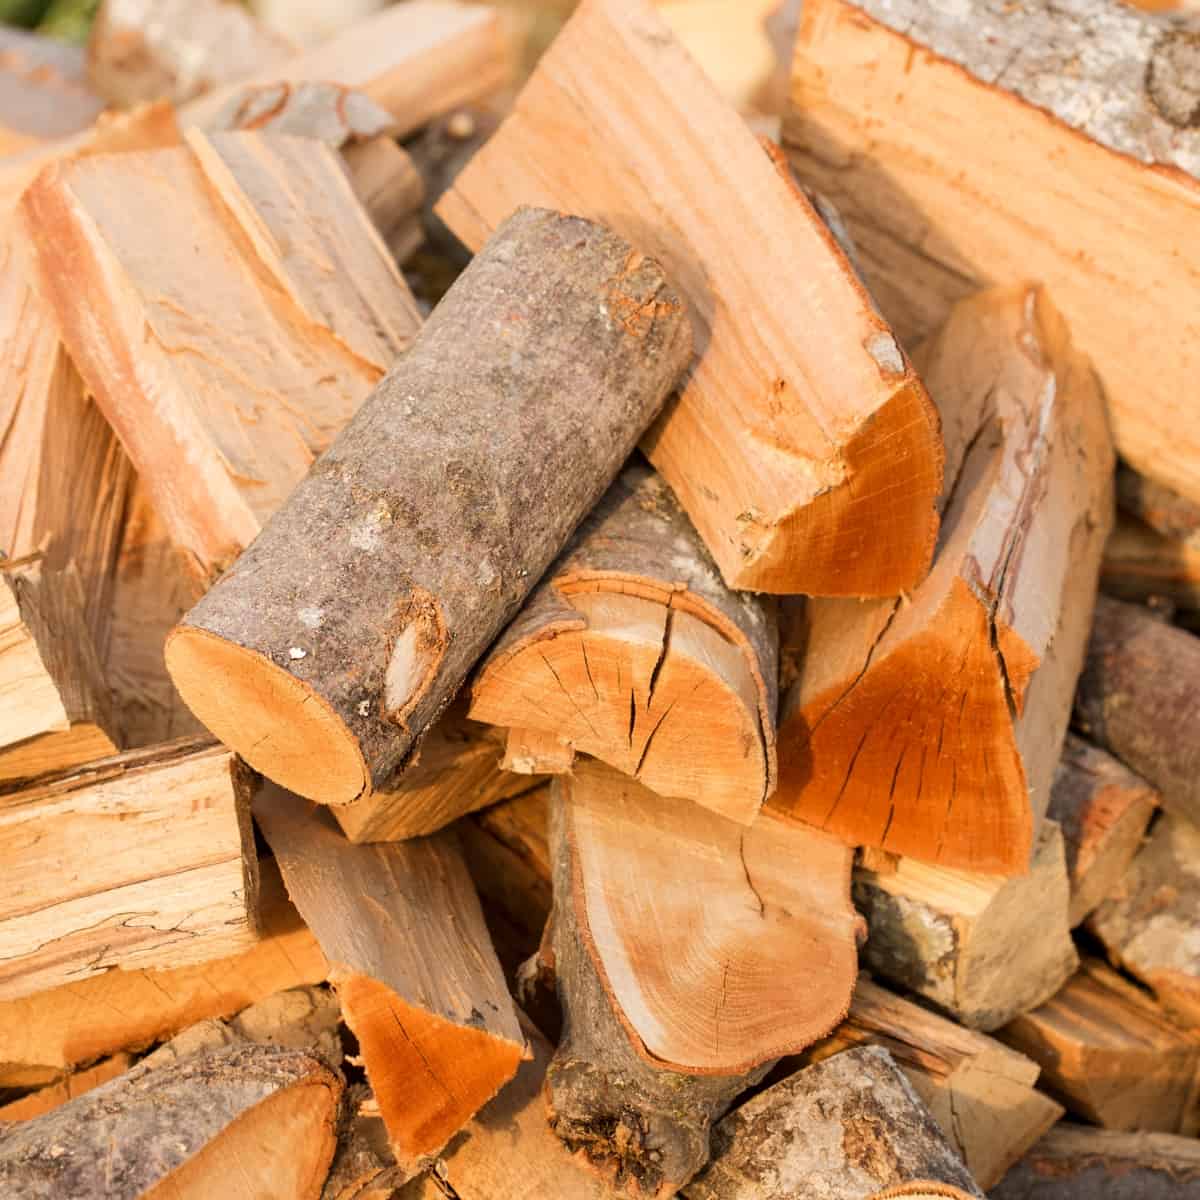 What is seasoned wood